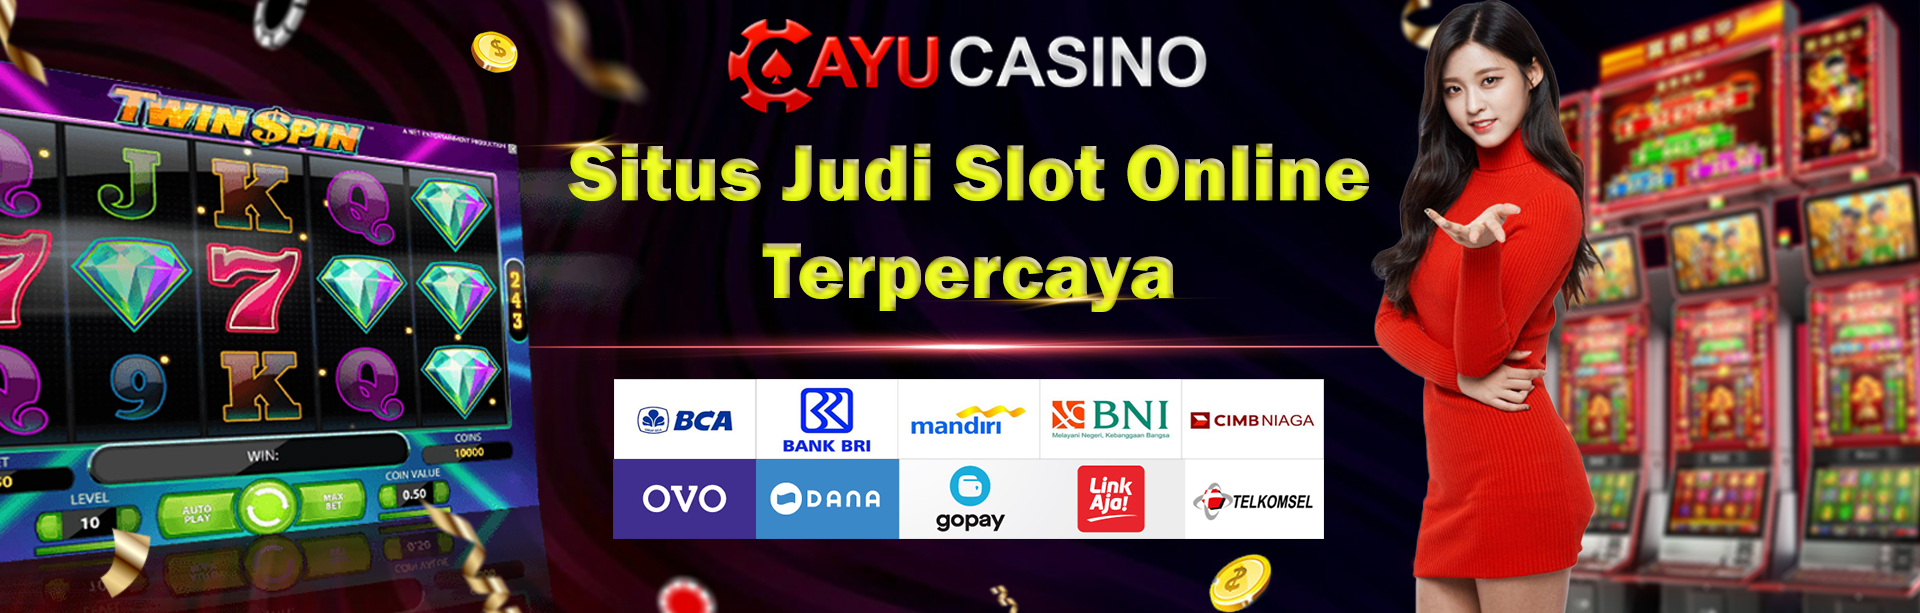 AYUCASINO | Daftar Situs Judi Game Slot Online Gacor Deposit Dana Pulsa